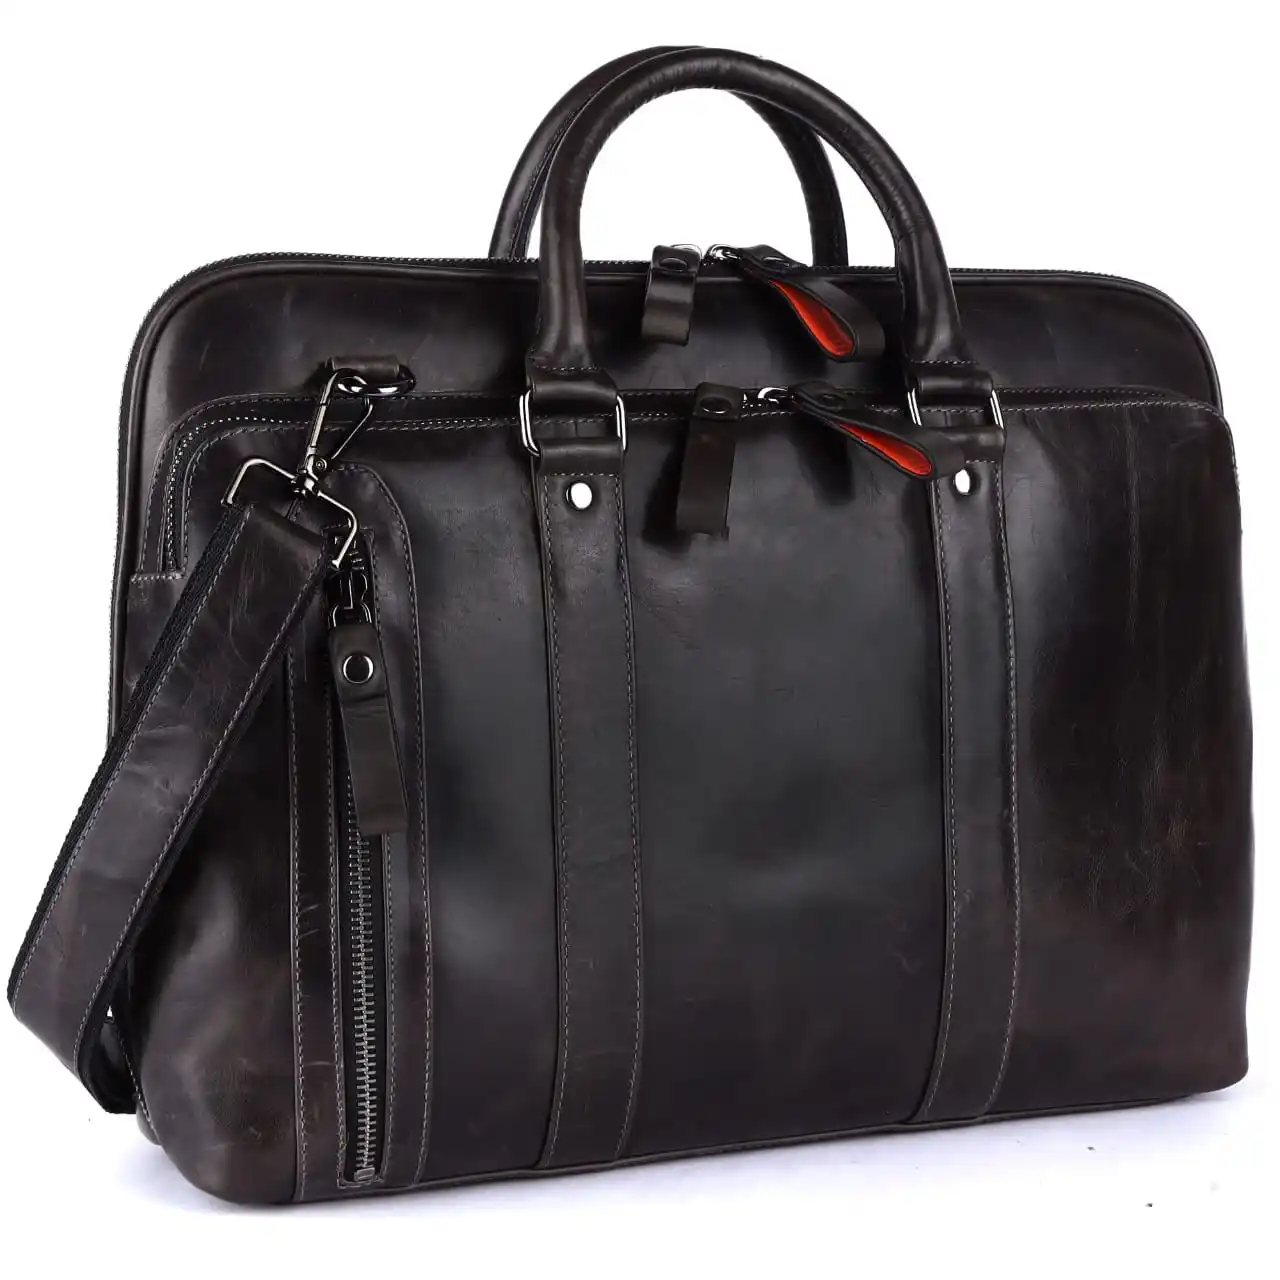 Wholesale Supply Briefcase Genuine Leather Business Bag, Office Bag, Handbag, Laptop Bag for Men